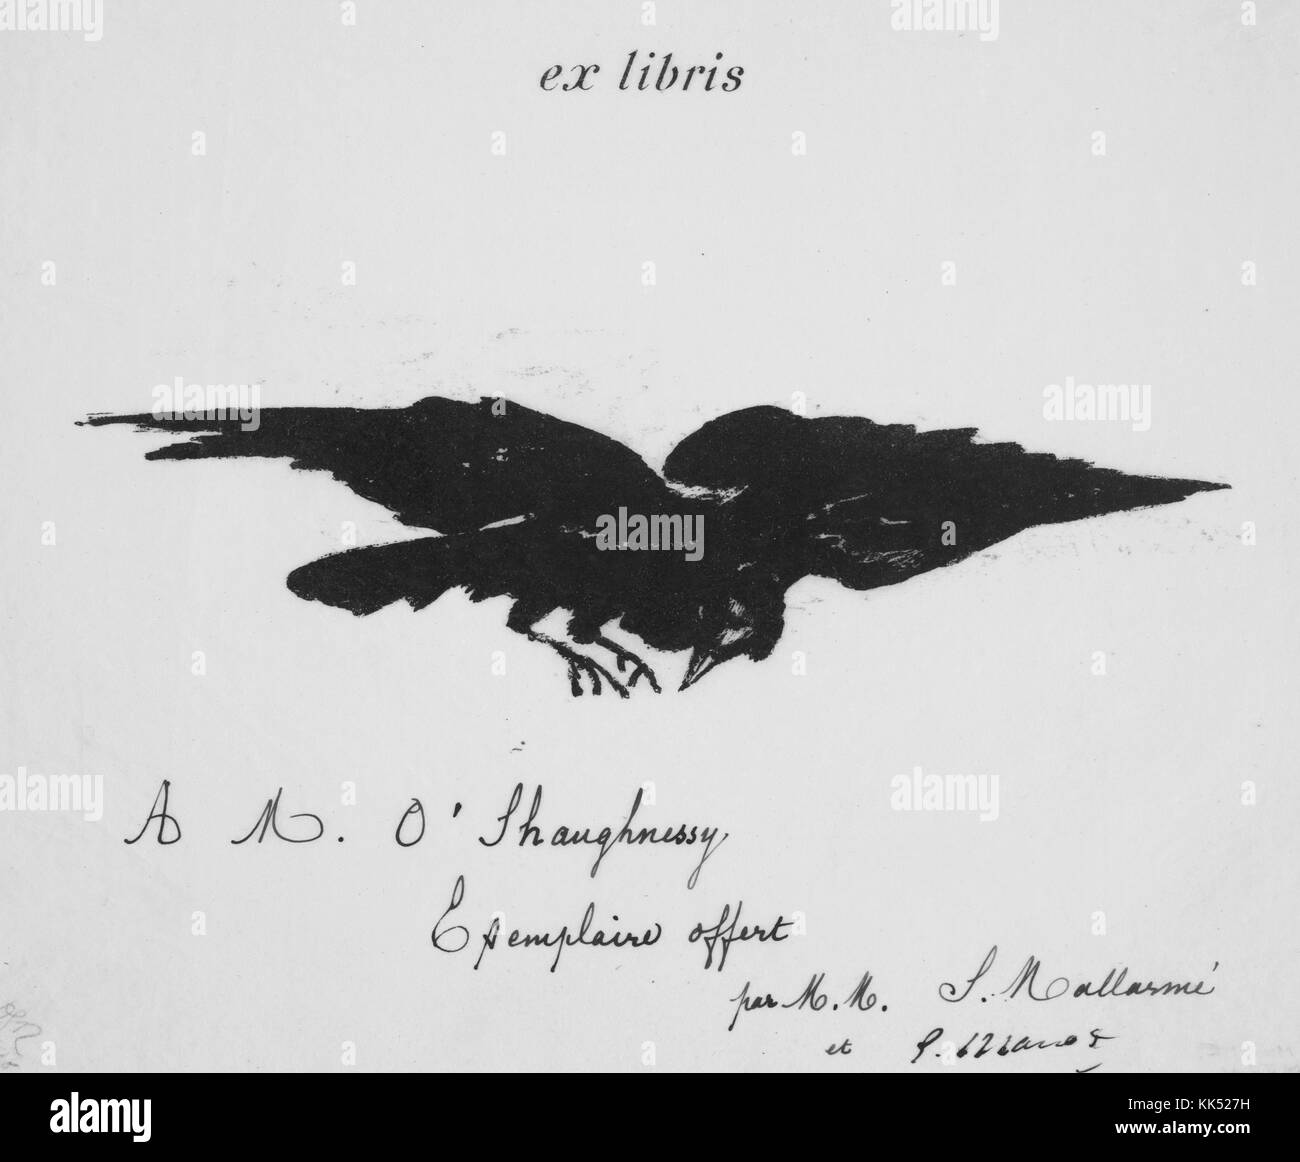 Eine Gravur der titelgebenden Vogel aus der Geschichte der Rabe von Edgar Allen Poe, die Abbildung von französischen Impressionisten Edouard Manet getan wurde, das Bild stammt aus einer illustrierten Adaption von Poe's bekannteste Arbeit in Frankreich, das Buch war kein kommerzieller Erfolg, 1871. Von der New York Public Library. Stockfoto